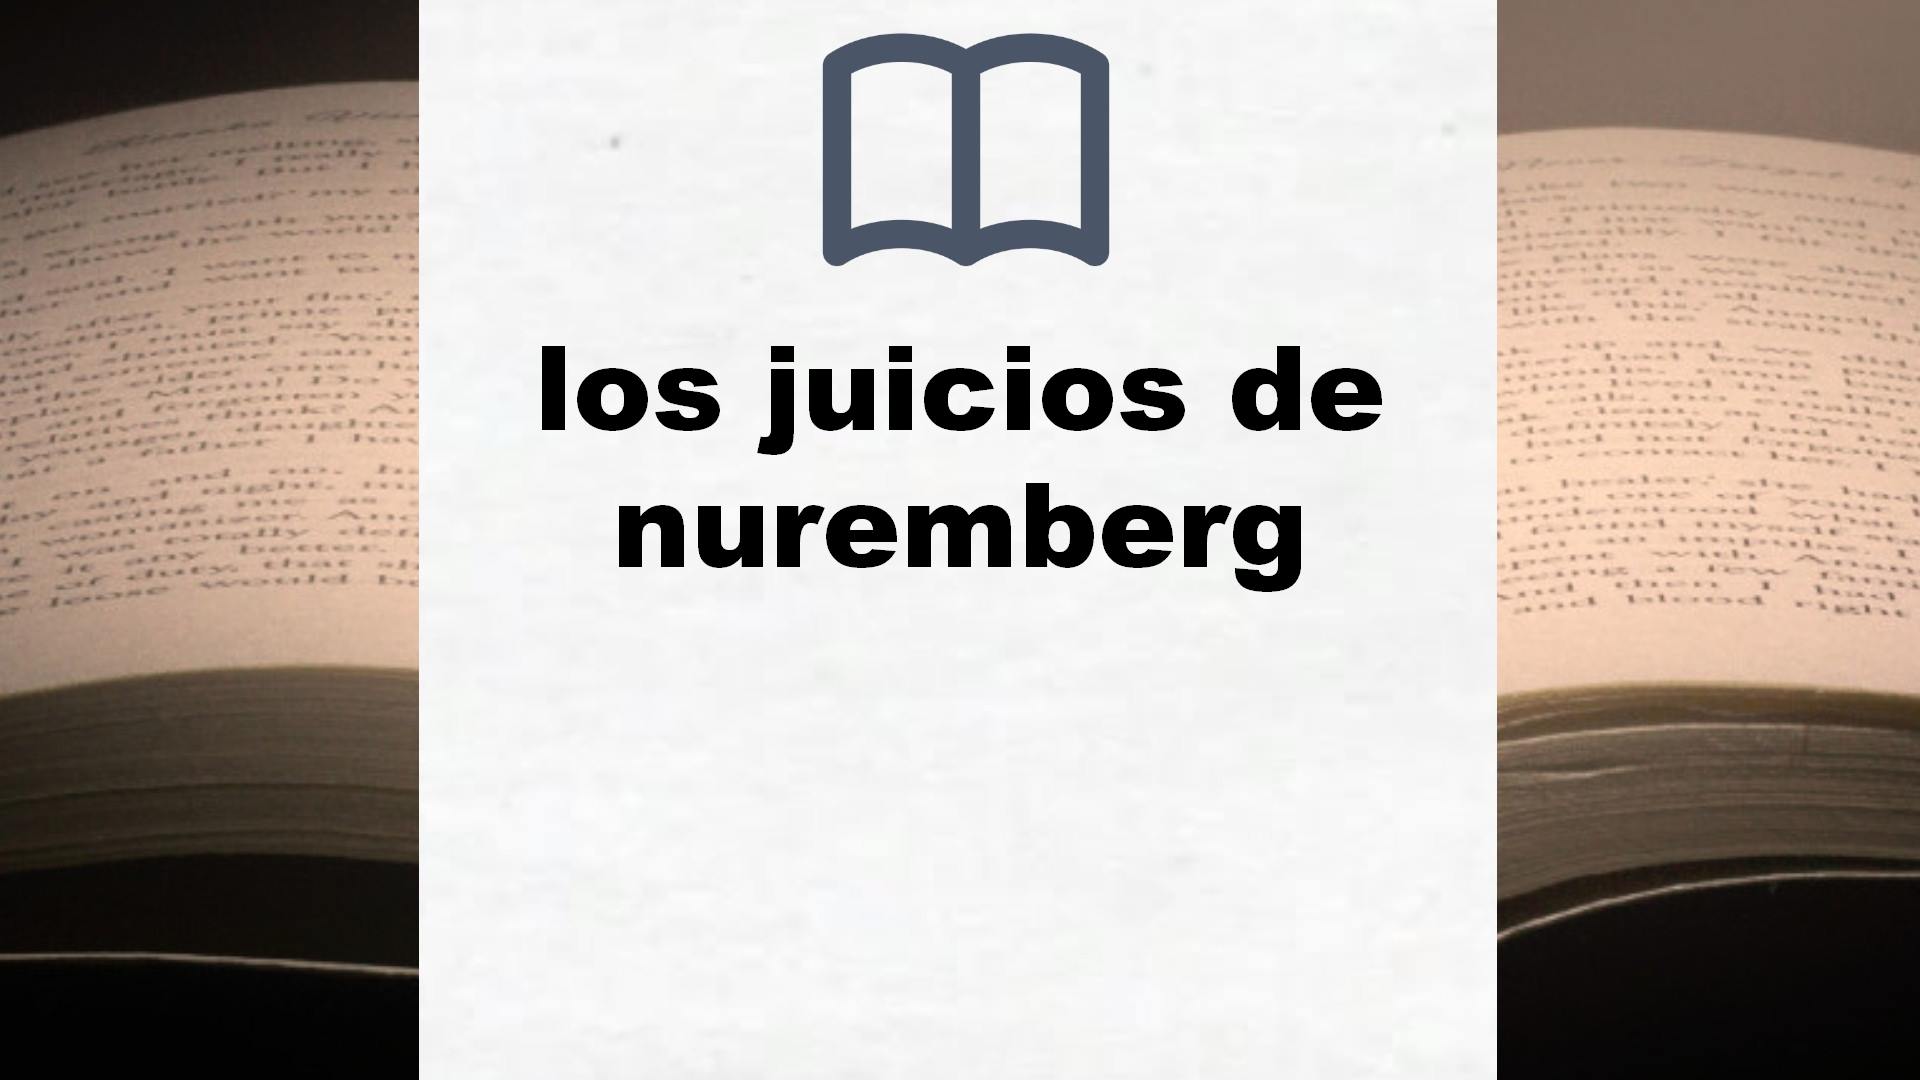 Libros sobre los juicios de nuremberg